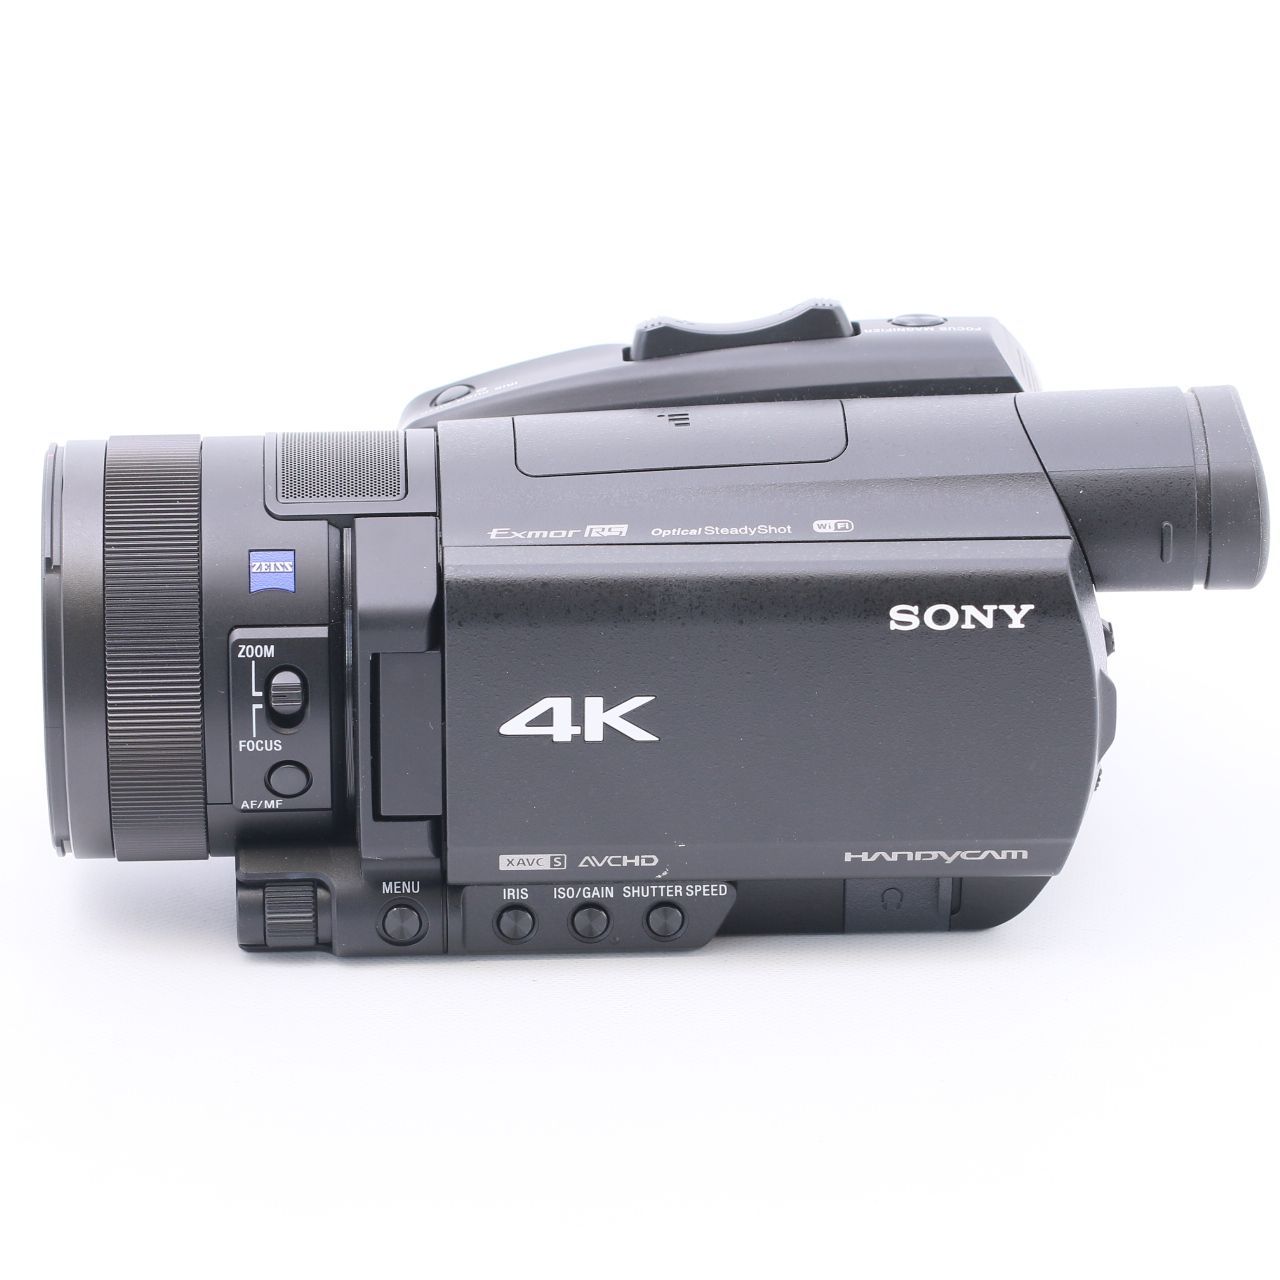 SONY Handycam FDR-AX700 光学ズーム12倍 ExmorRS カメラ本舗｜Camera honpo メルカリ